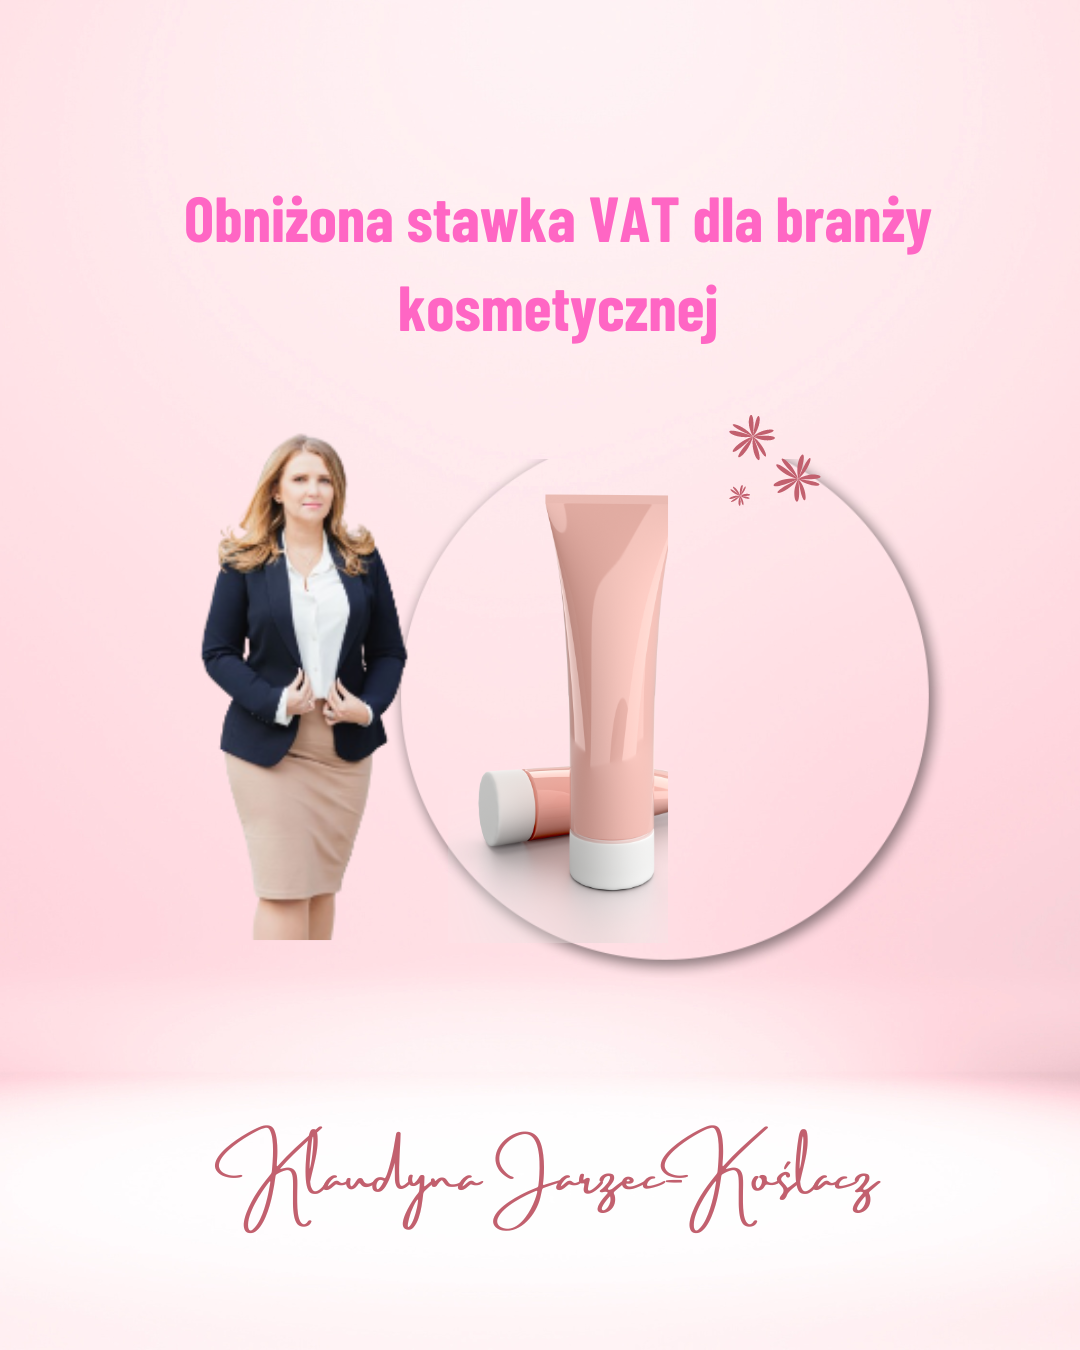 Obniżona stawka VAT dla branży kosmetycznej